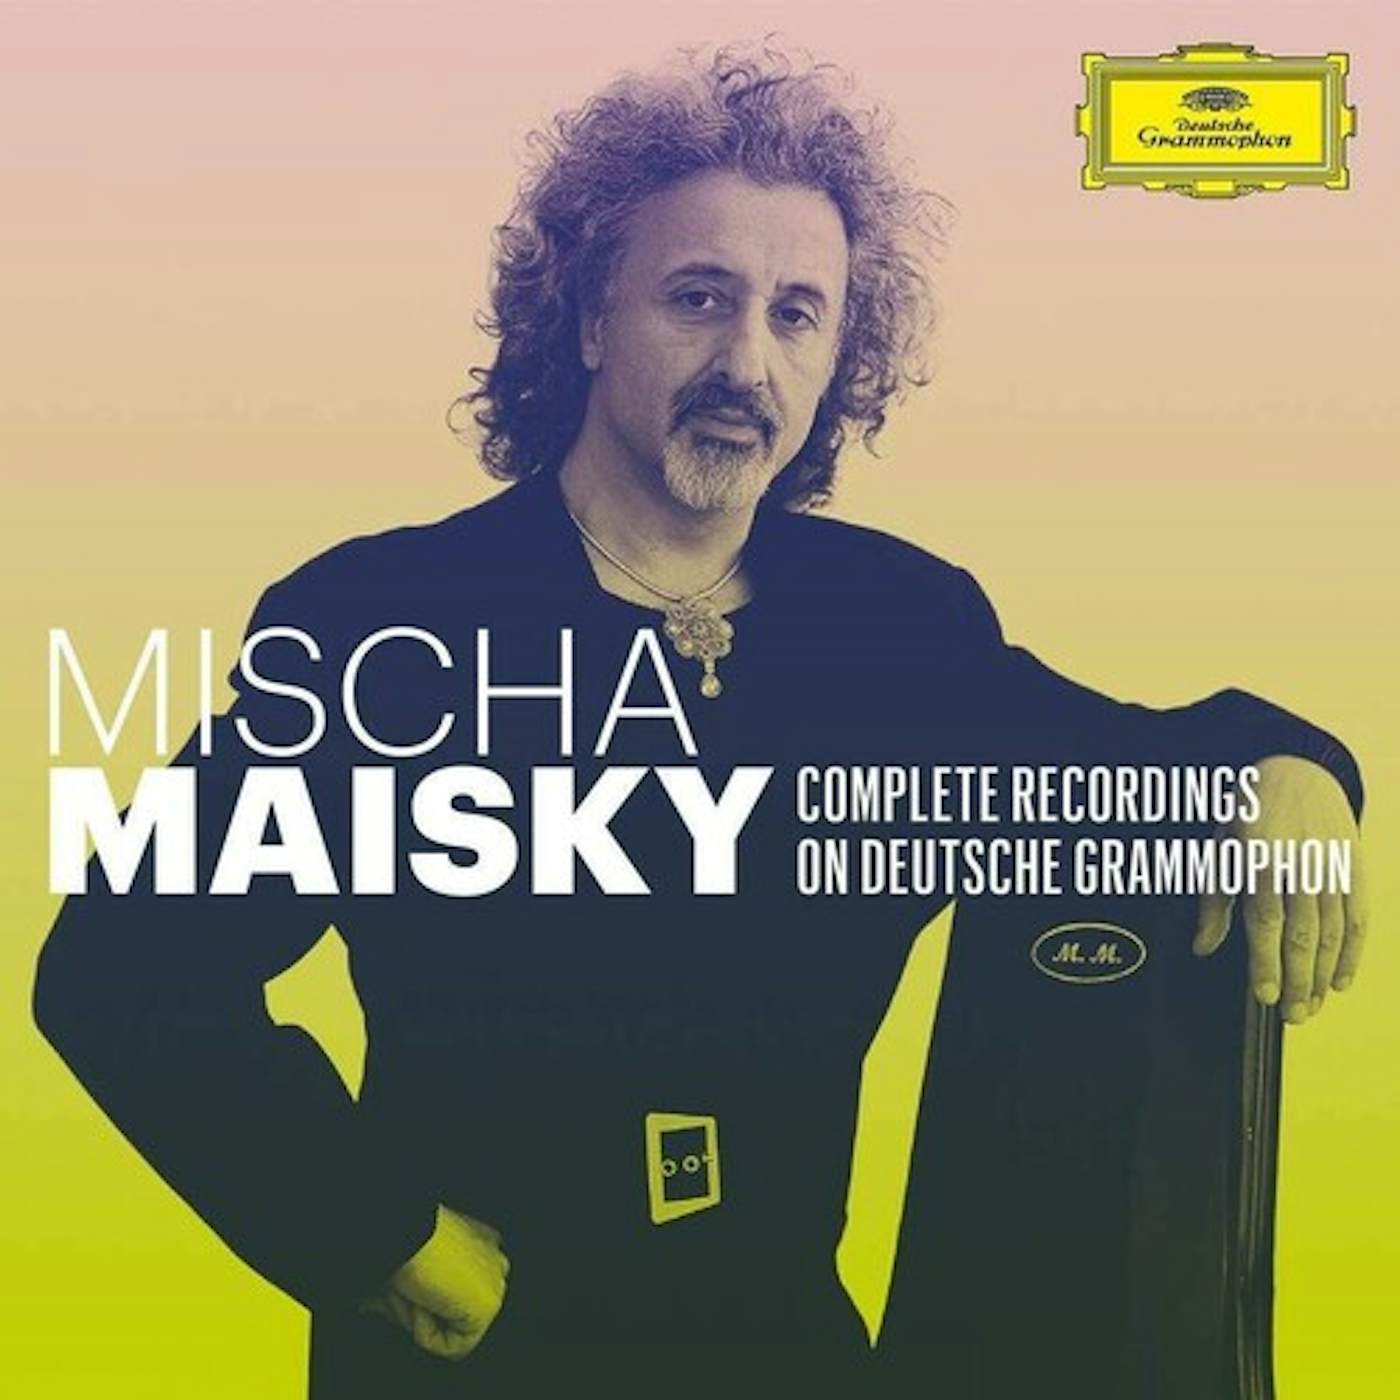 Mischa Maisky COMPLETE RECORDINGS ON DEUTSCHE GRAMMOPHON CD